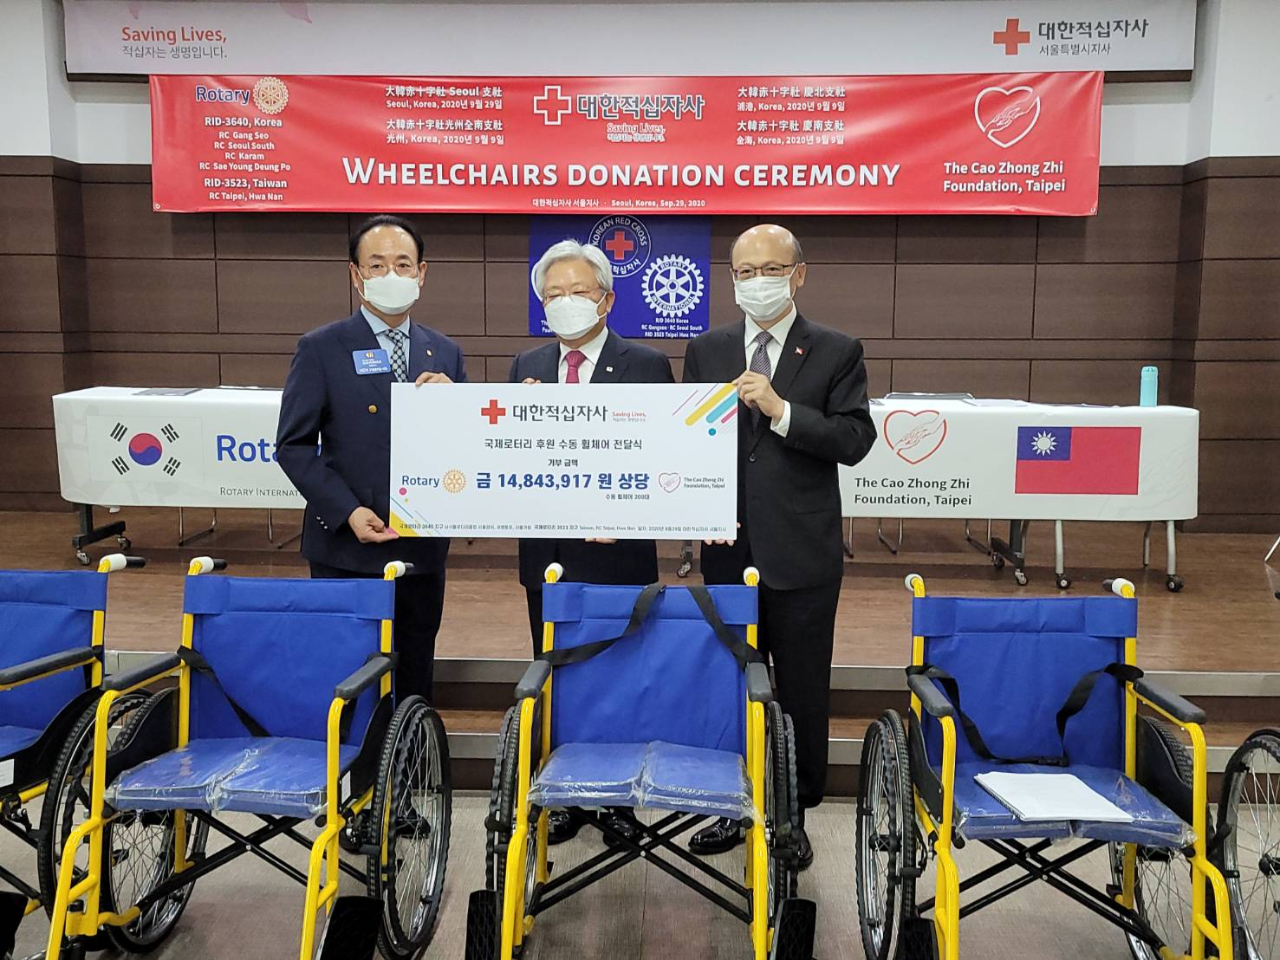 財團法人曹仲植基金會與韓國國際扶輪社聯合捐贈200輛輪椅給韓國紅十字會，捐贈儀式於9月29日舉行，駐韓代表處易志成副代表出席活動並致詞。